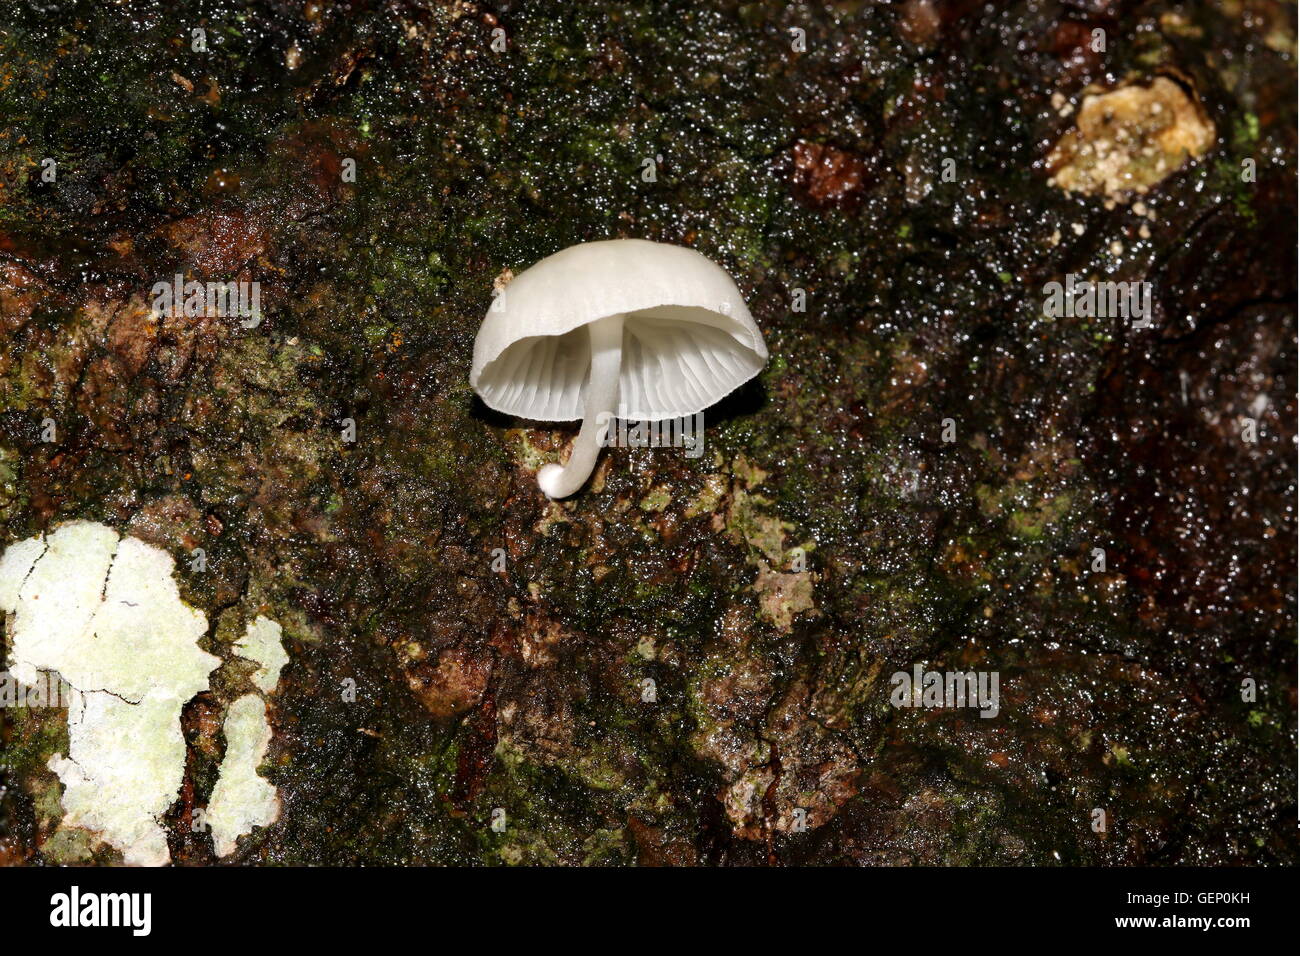 La culture des champignons blanc lumineux sur un tronc d'arbre. Banque D'Images